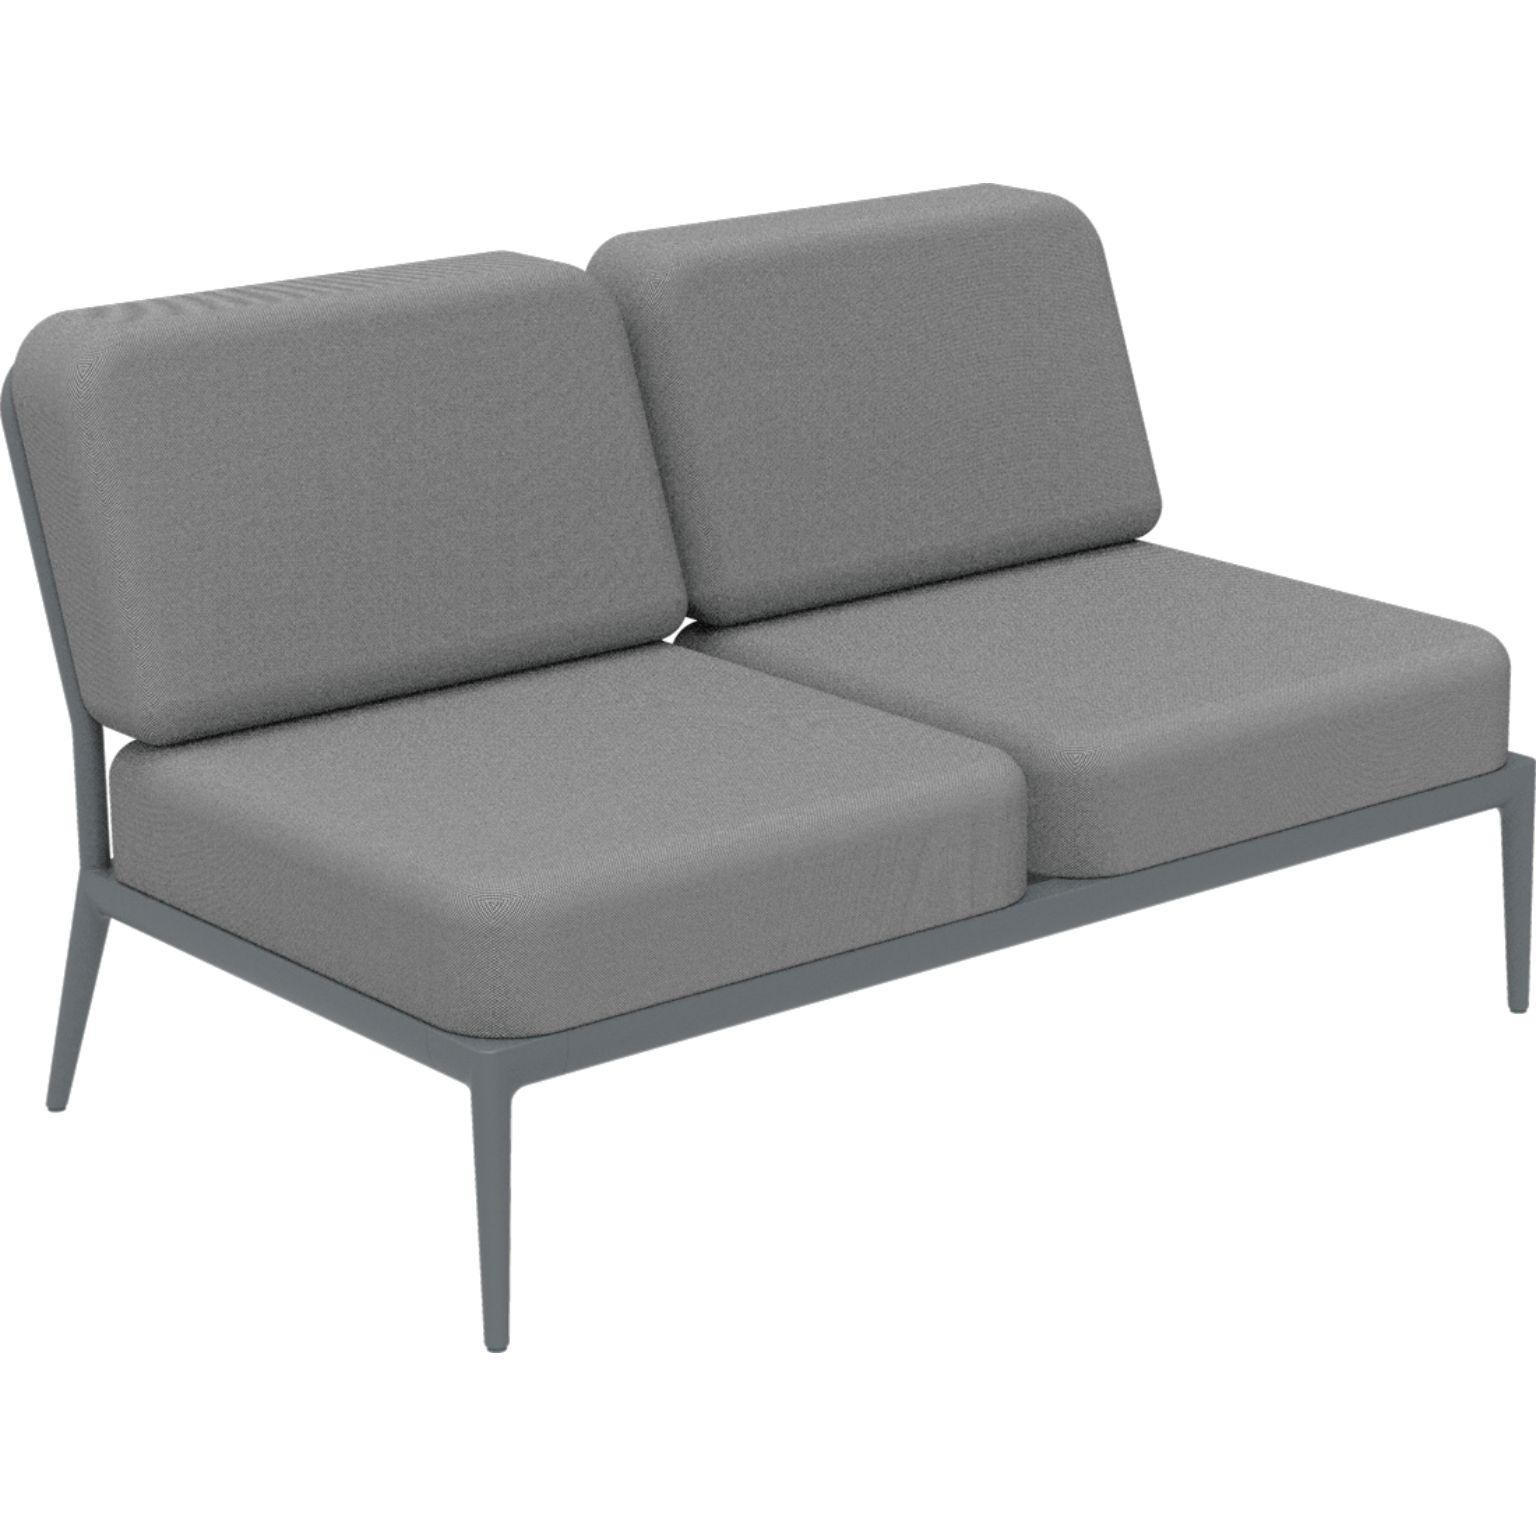 Canapé modulable double central gris Nature par MOWEE
Dimensions : 83 x 136 x 81 cm (hauteur du siège : 42 cm) : D83 x L136 x H81 cm (hauteur d'assise 42 cm).
Matériau : Aluminium et rembourrage.
Poids : 27 kg.
Également disponible en différentes